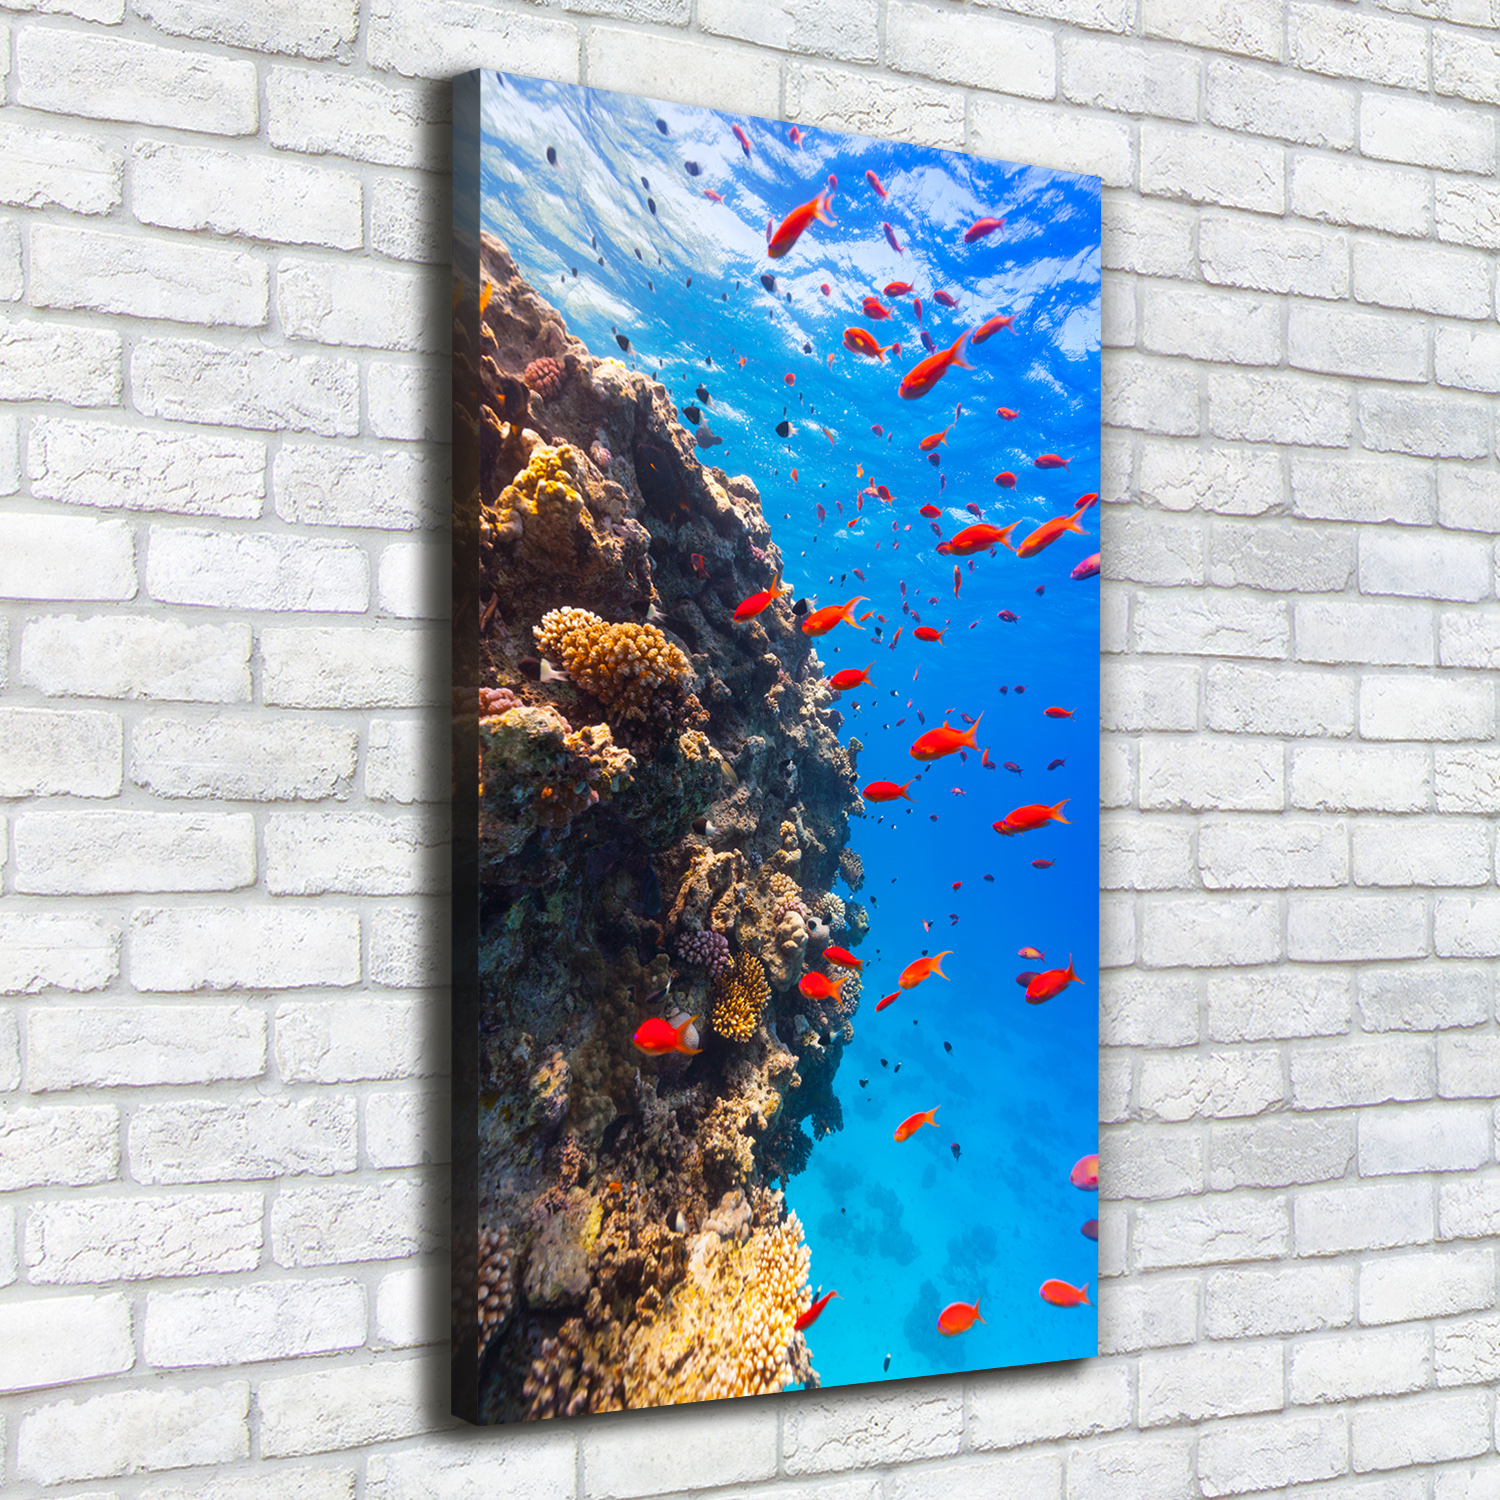 Leinwand-Bild Kunstdruck Hochformat 50x100 Bilder Korallenriff